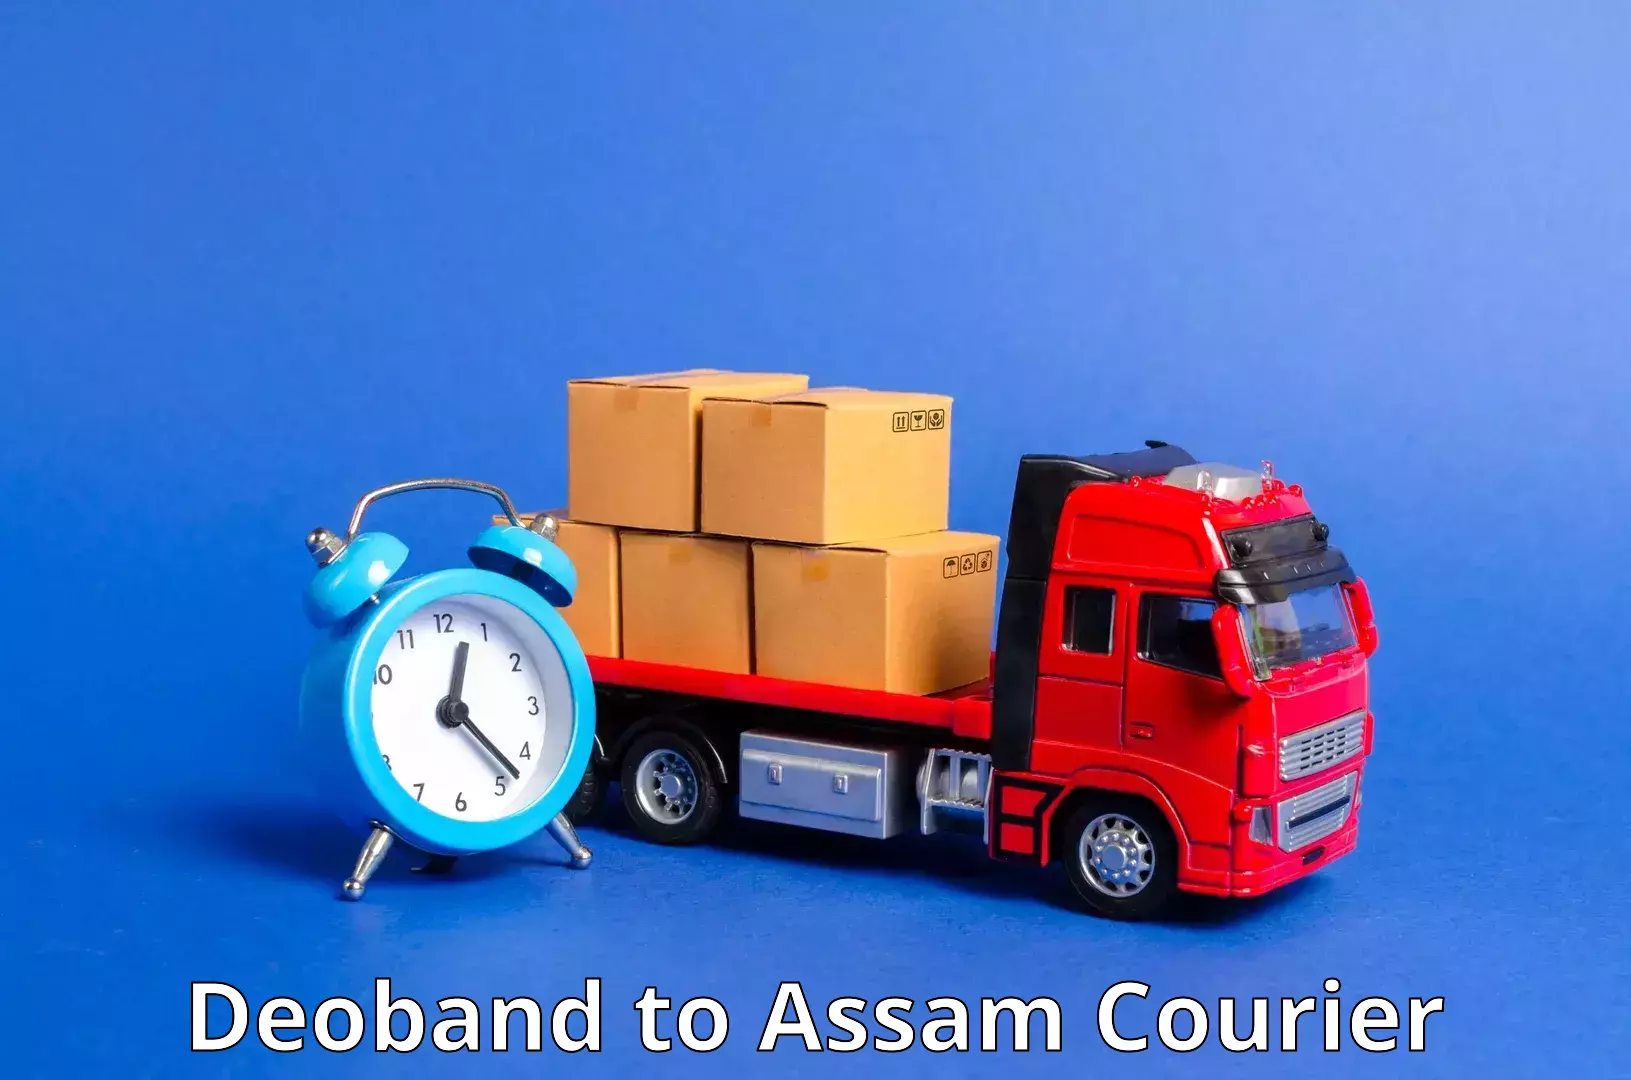 Flexible delivery schedules Deoband to Jorabat